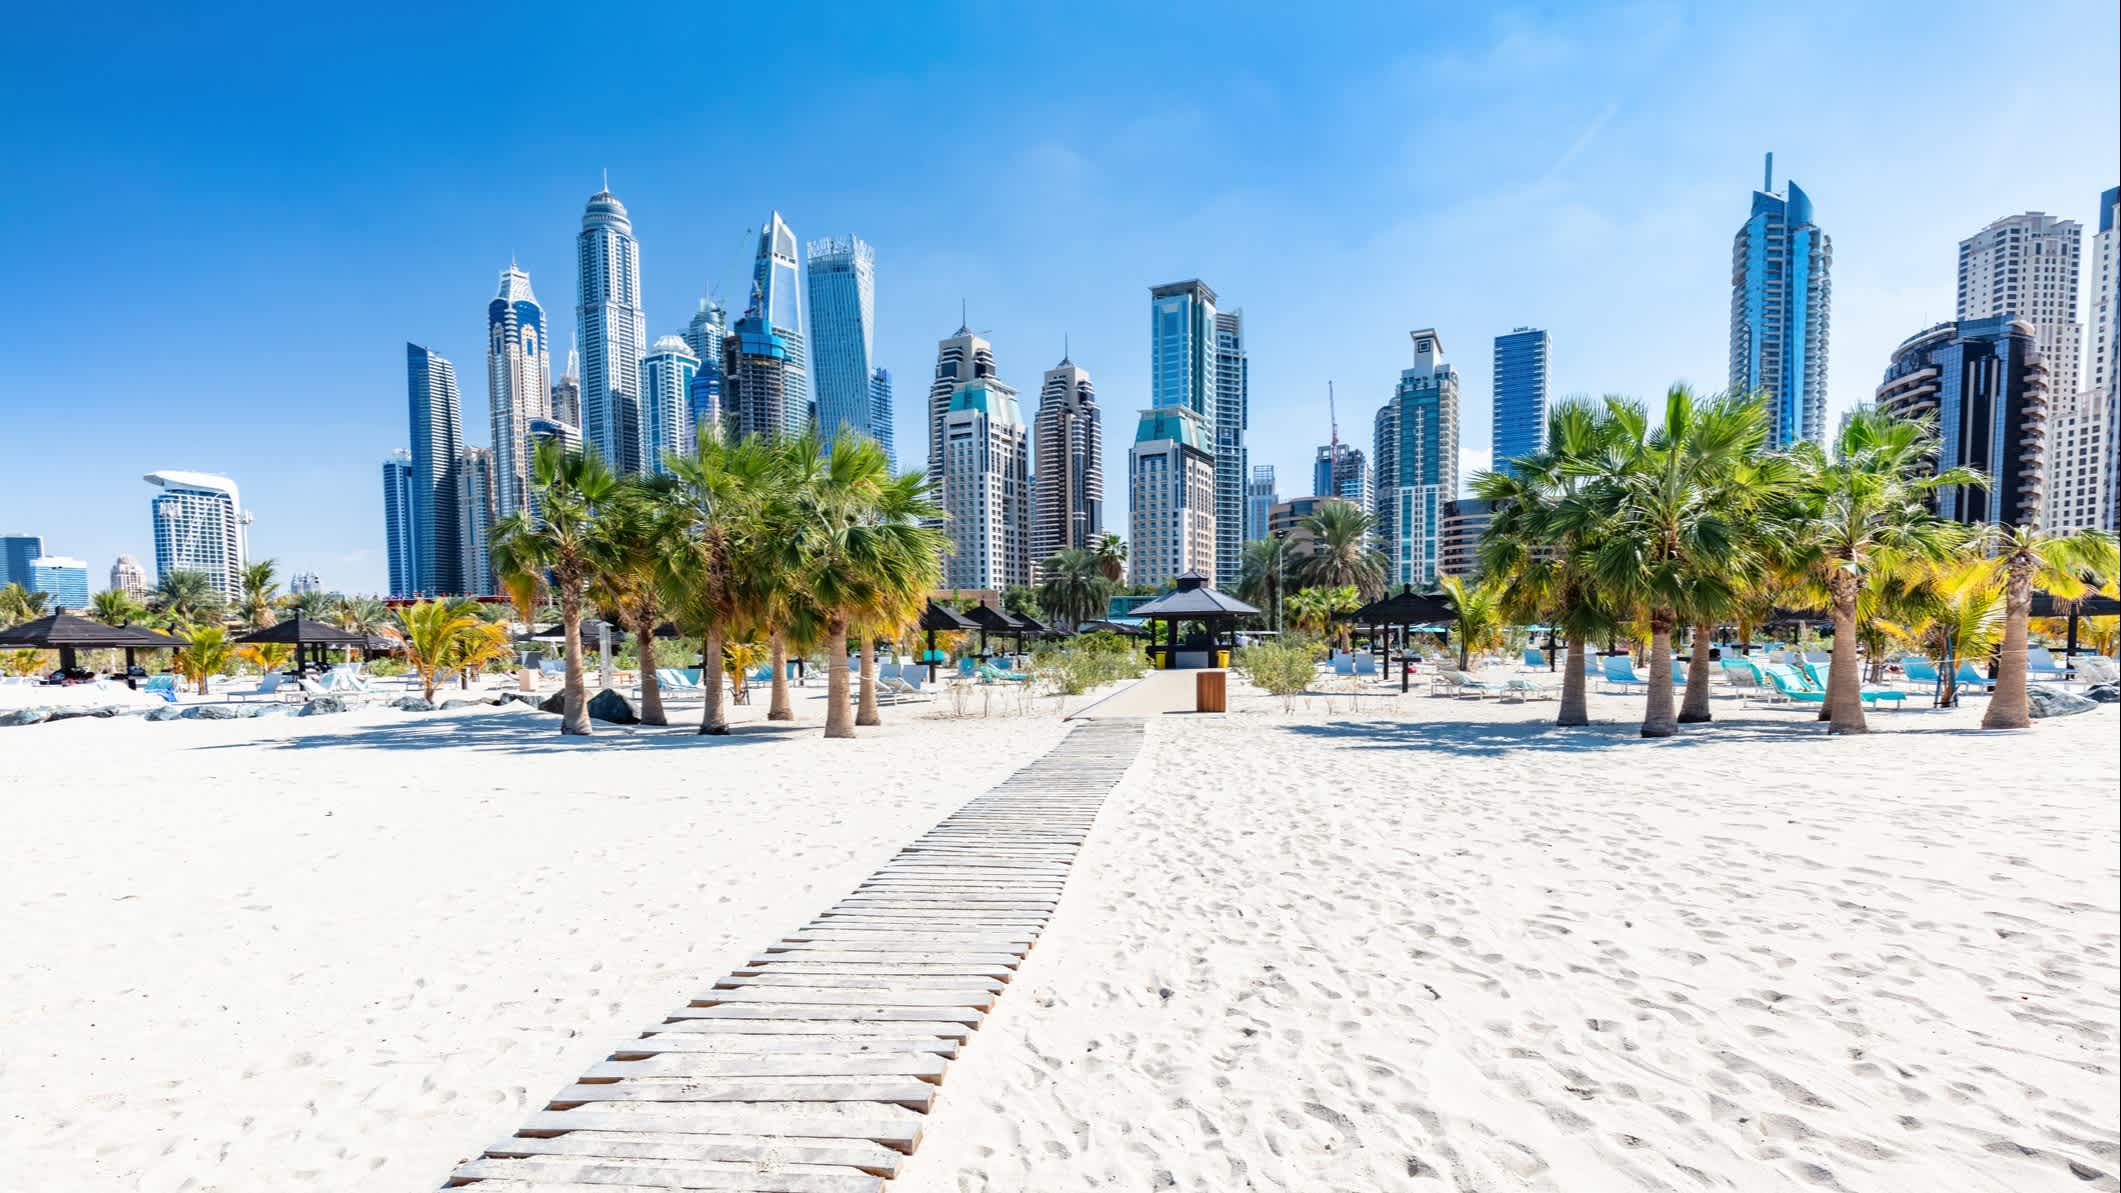 Das Panorama mit Dubai Jumeirah Strand und Marina Wolkenkratzer in den Vereinigten Arabischen Emiraten.